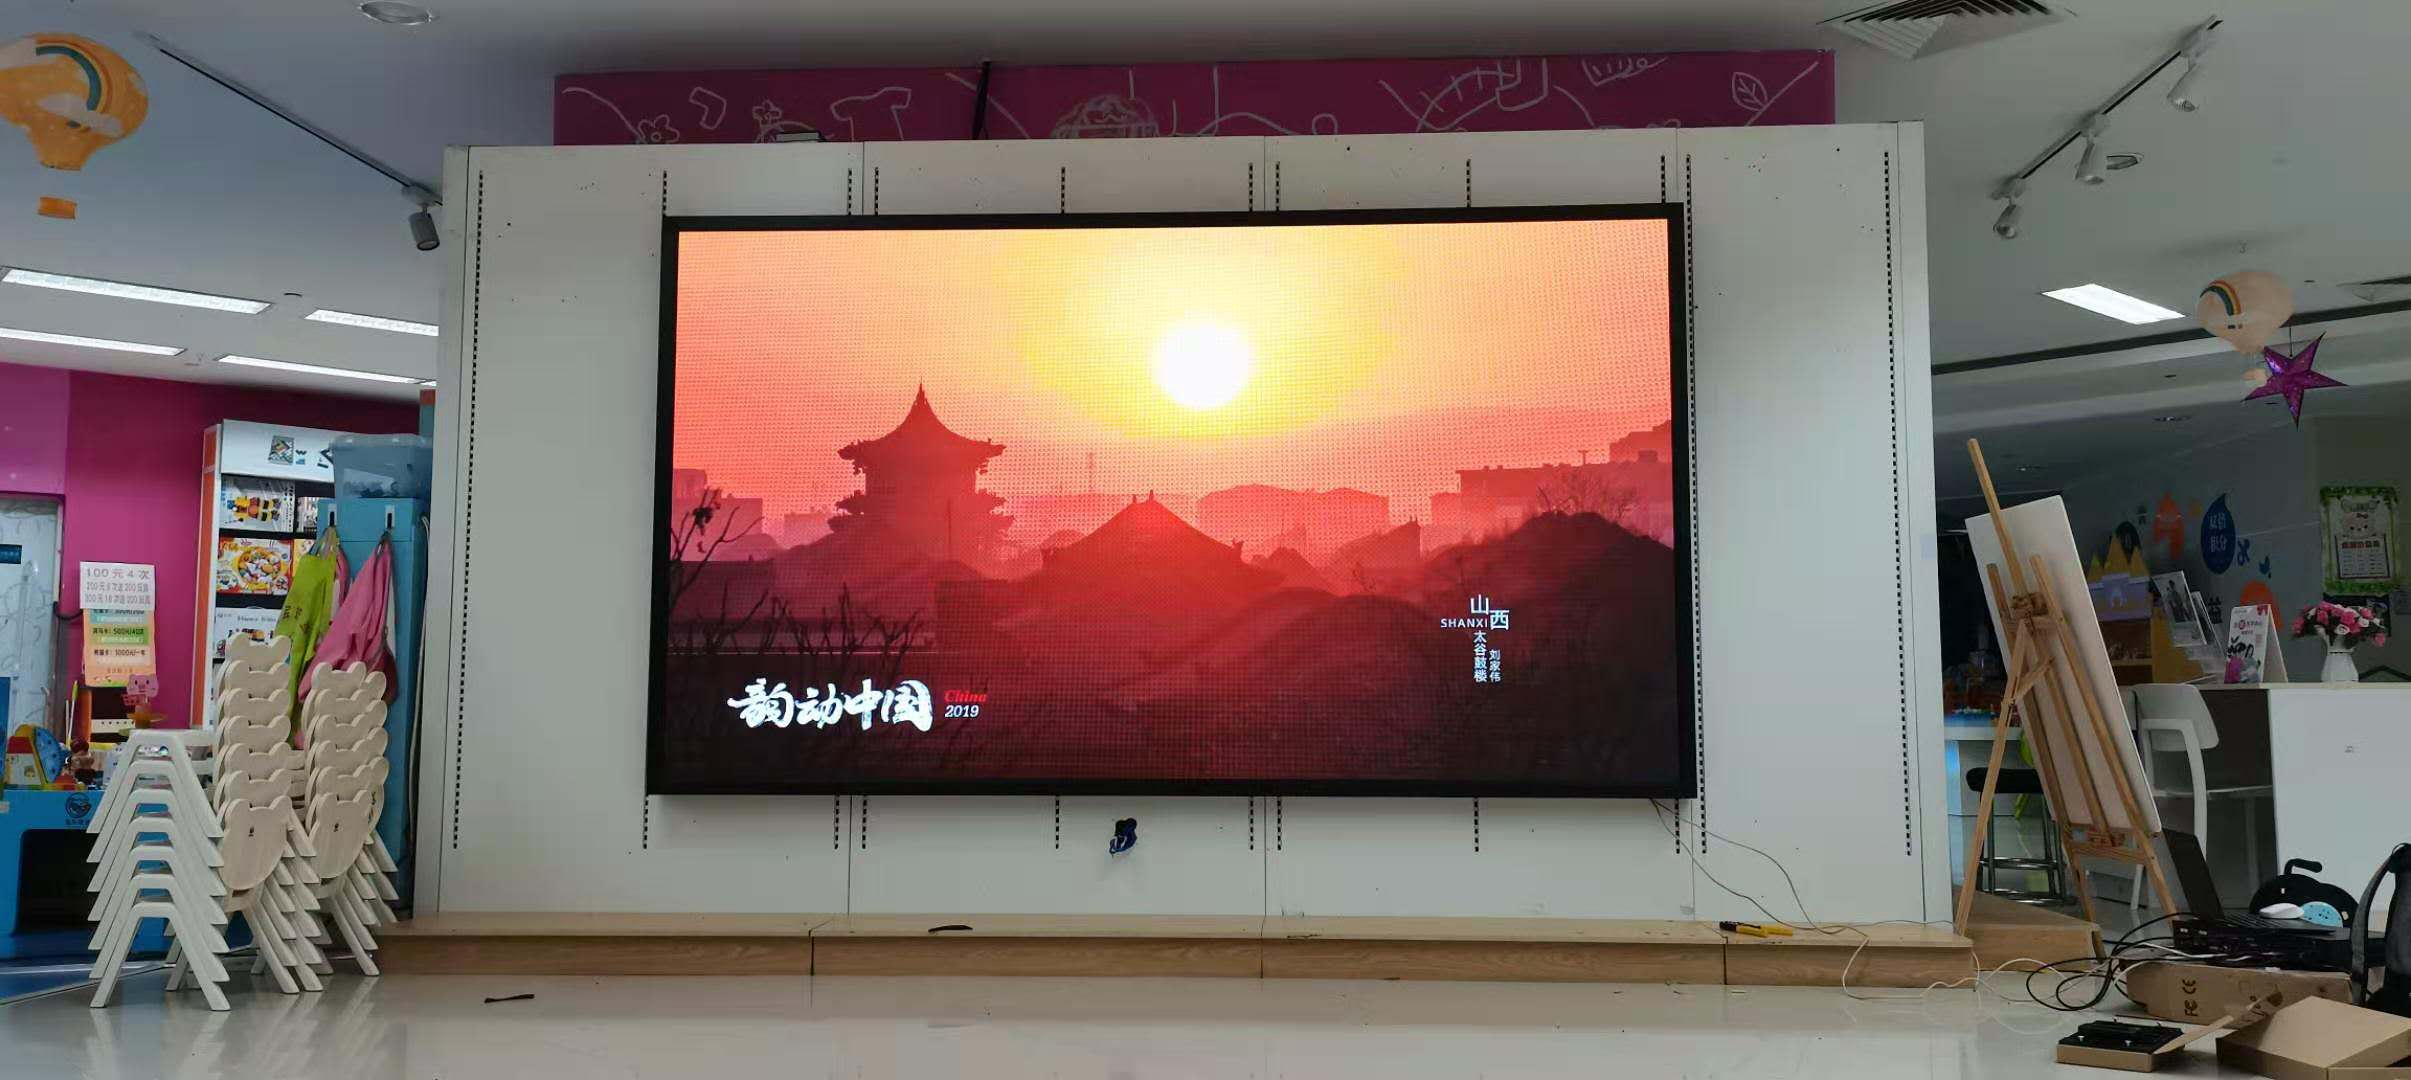 P2.5室内全彩LED显示屏-2880*1600-广州市荔湾区领展购物广场